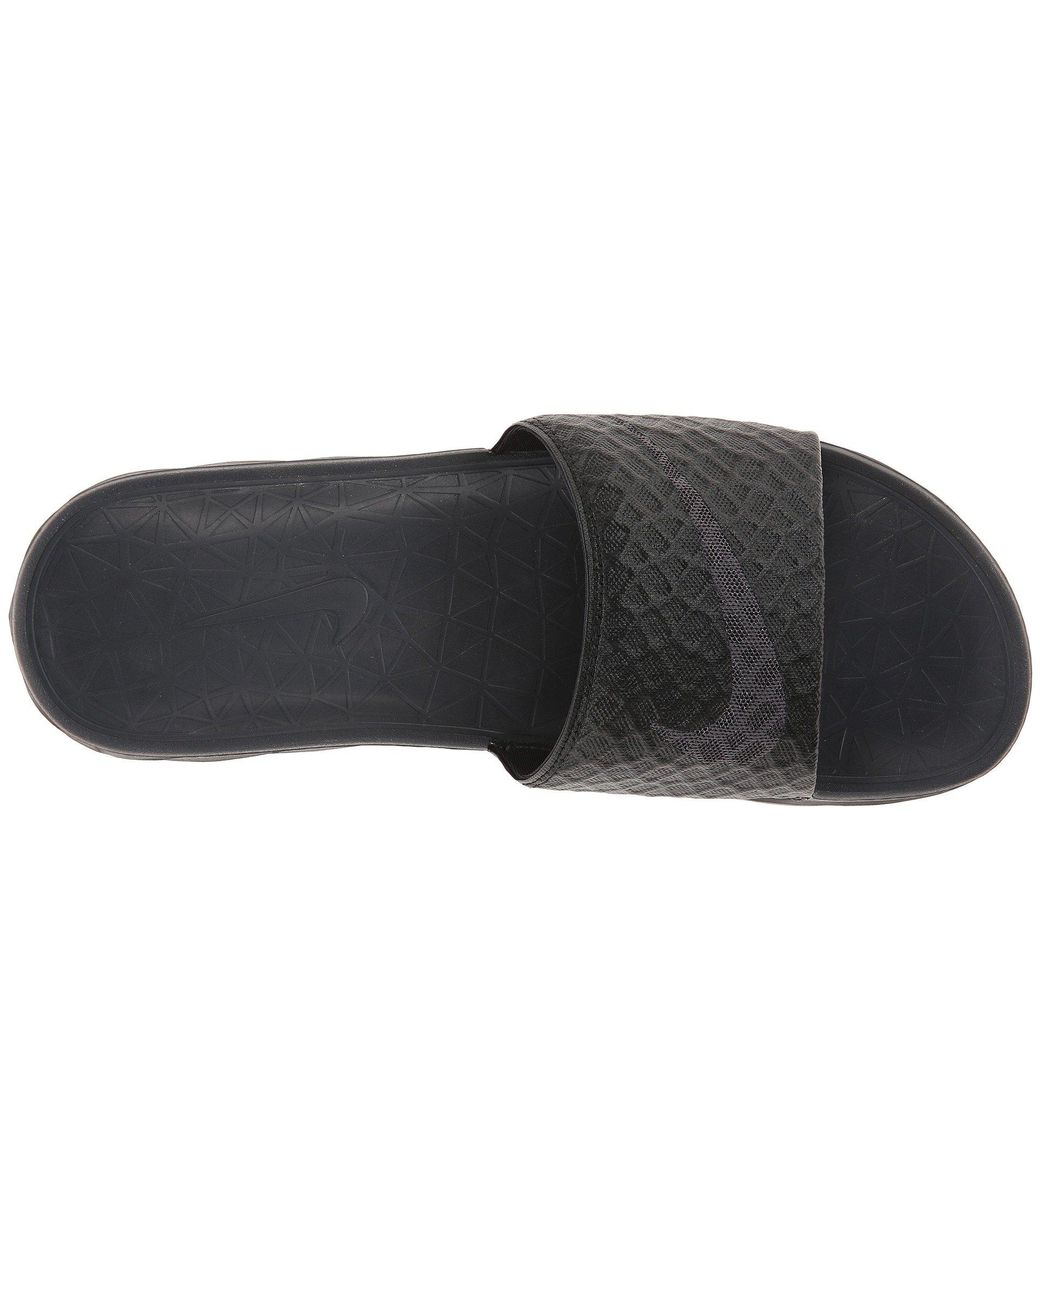 Nike Benassi Solarsoft Slide 2 (black/anthracite) Men's Slide Shoes for Men  | Lyst